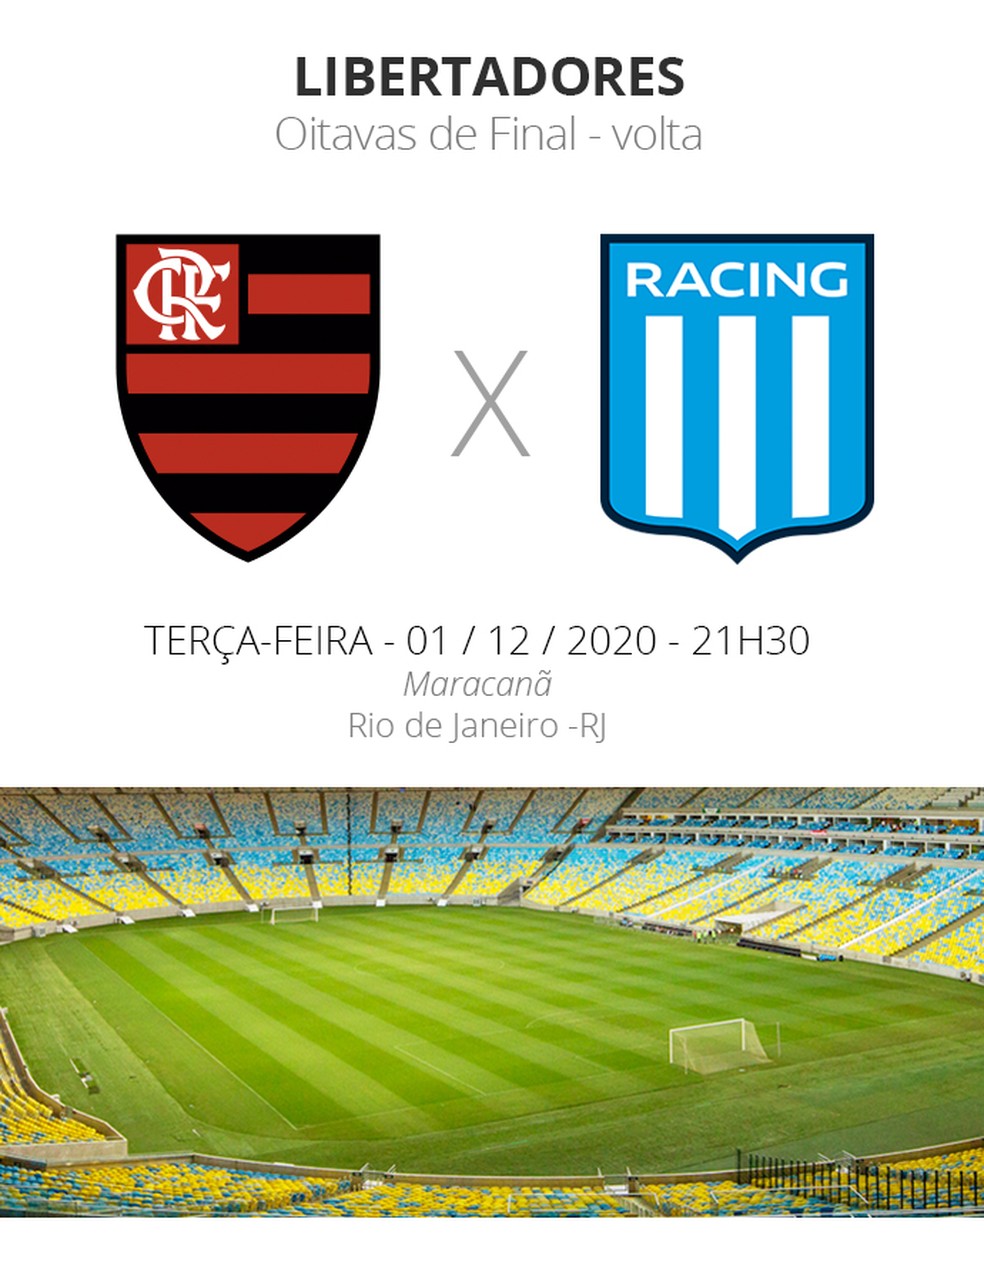 Flamengo x Racing ao vivo, onde assistir na TV ao jogo do Flamengo